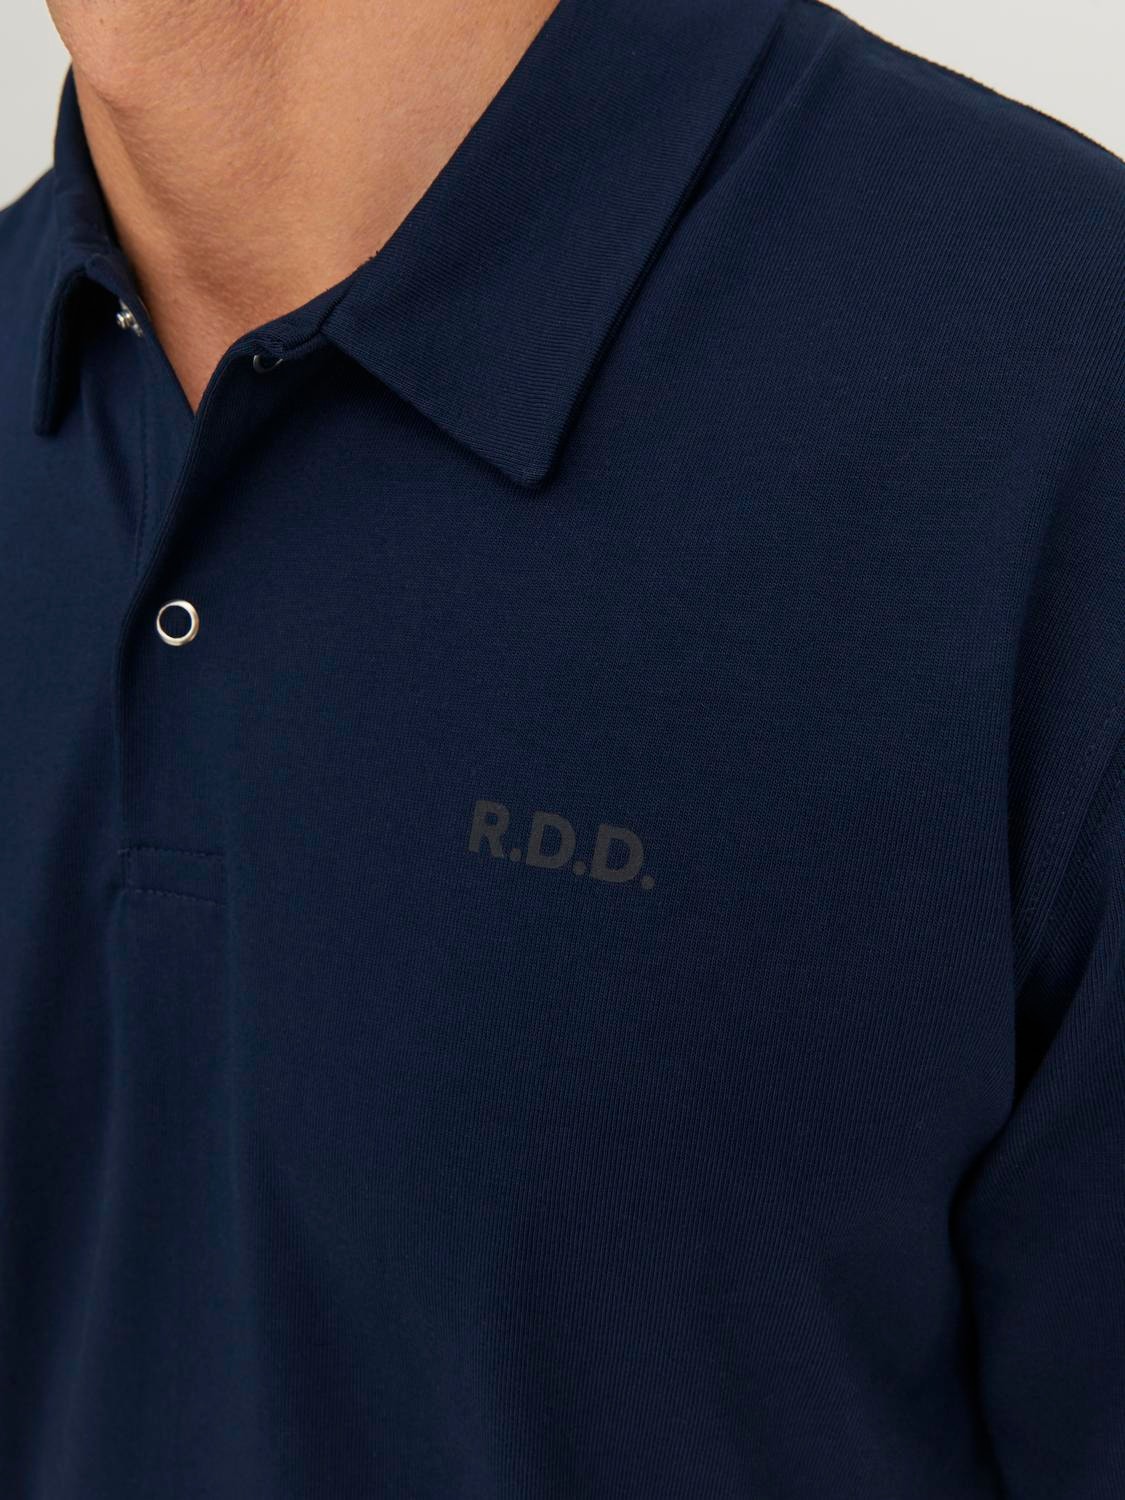 Jack & Jones RDD Logo Polo Polo -Navy Blazer - 12232814